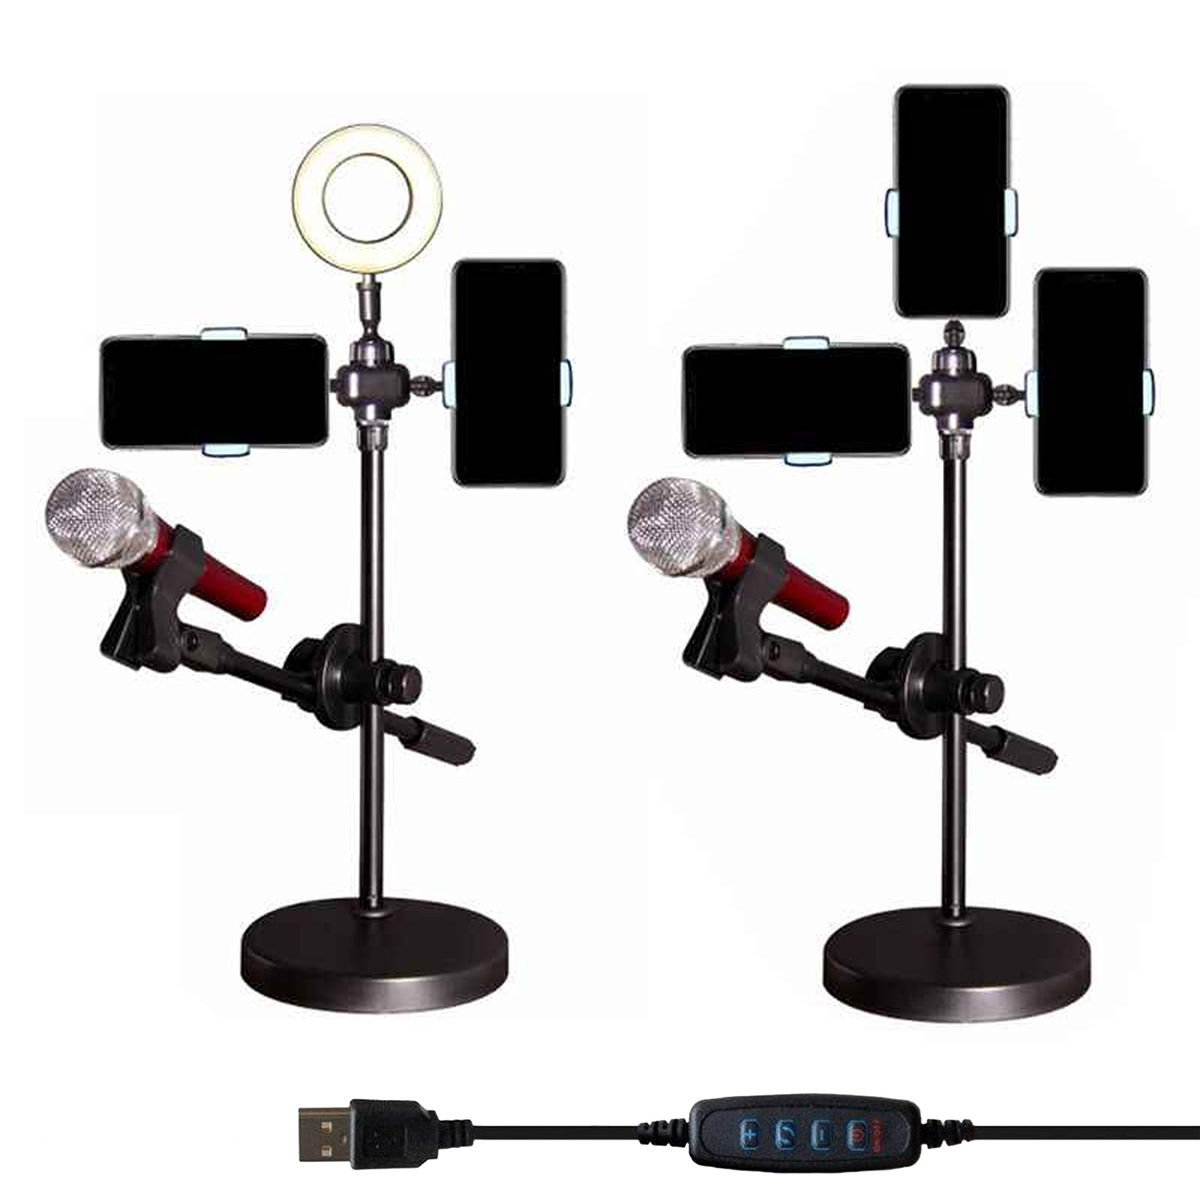 Настольная кольцевая лампа с держателем для микрофона и телефона (смартфона) для лайв-стриминга, цвет черный.